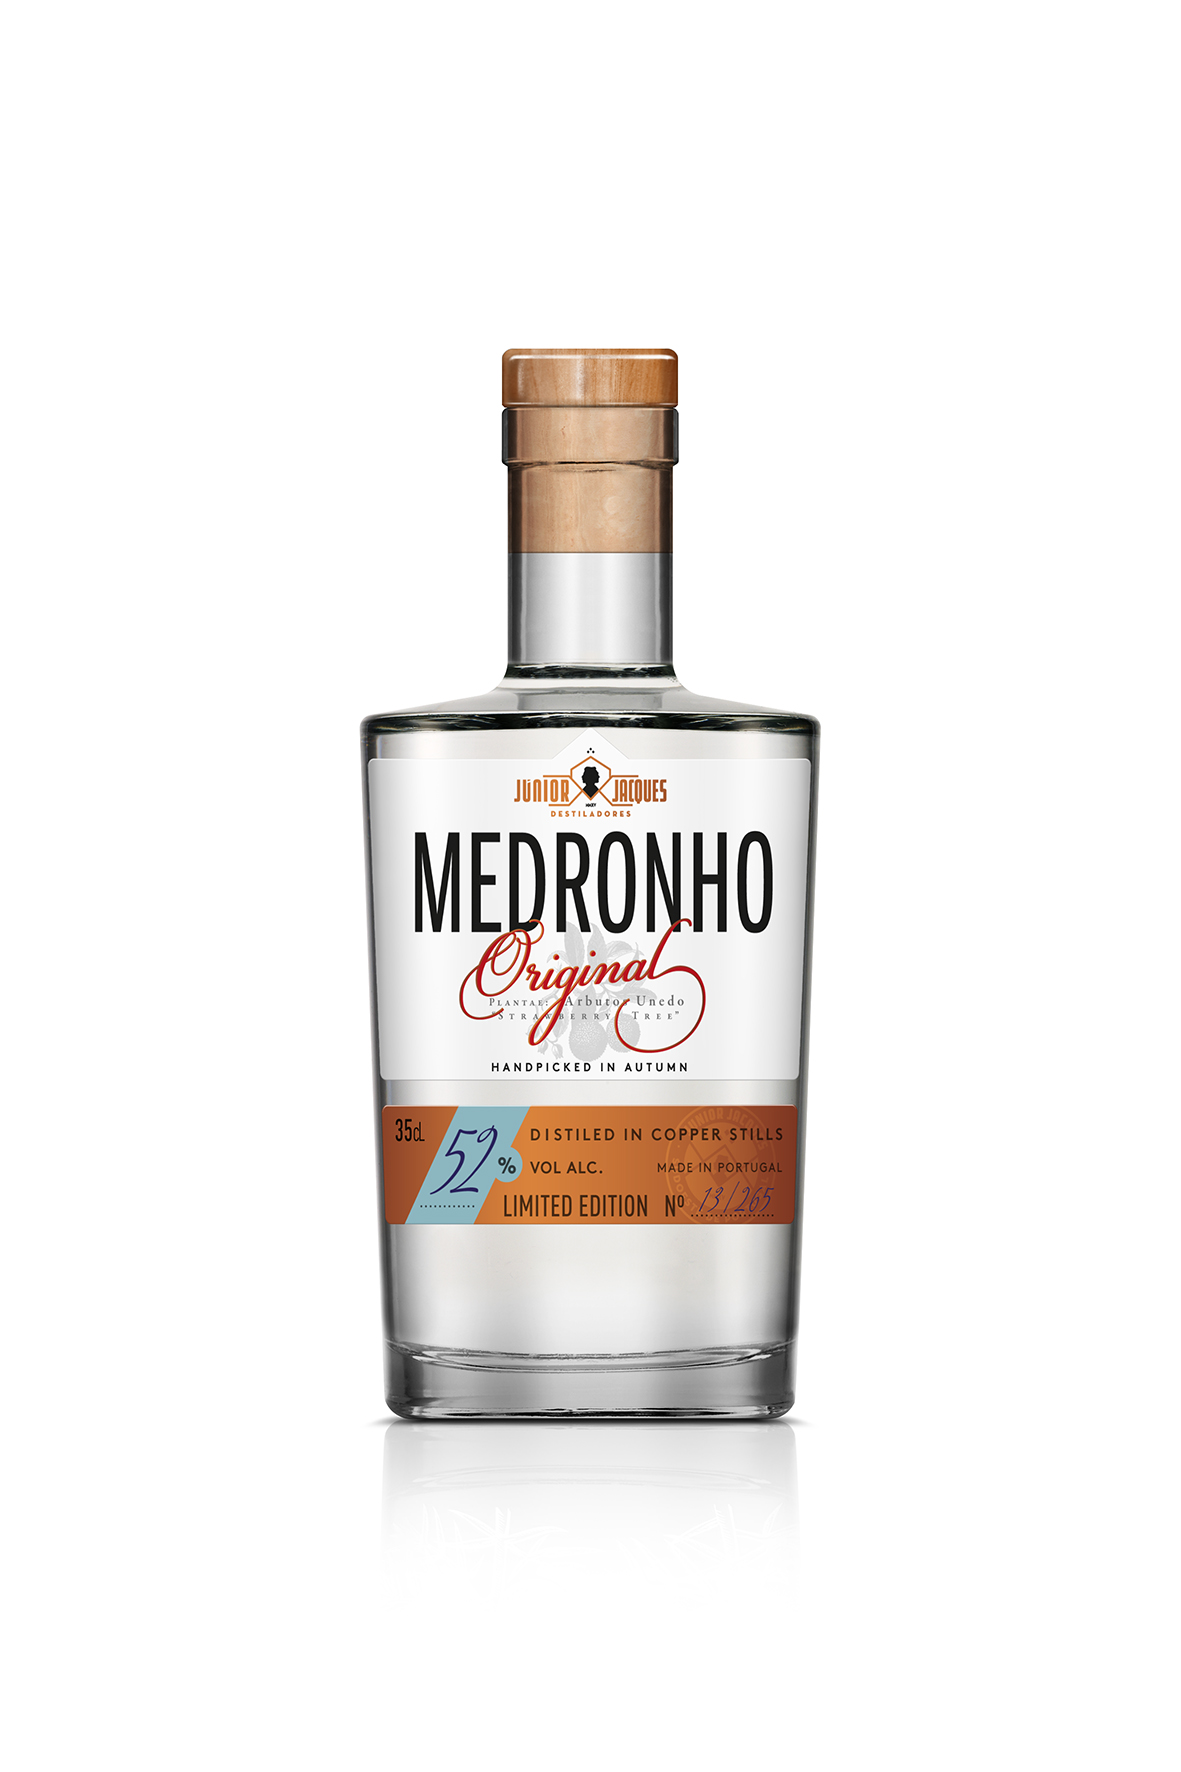 J&J – Medronho Original Frontal